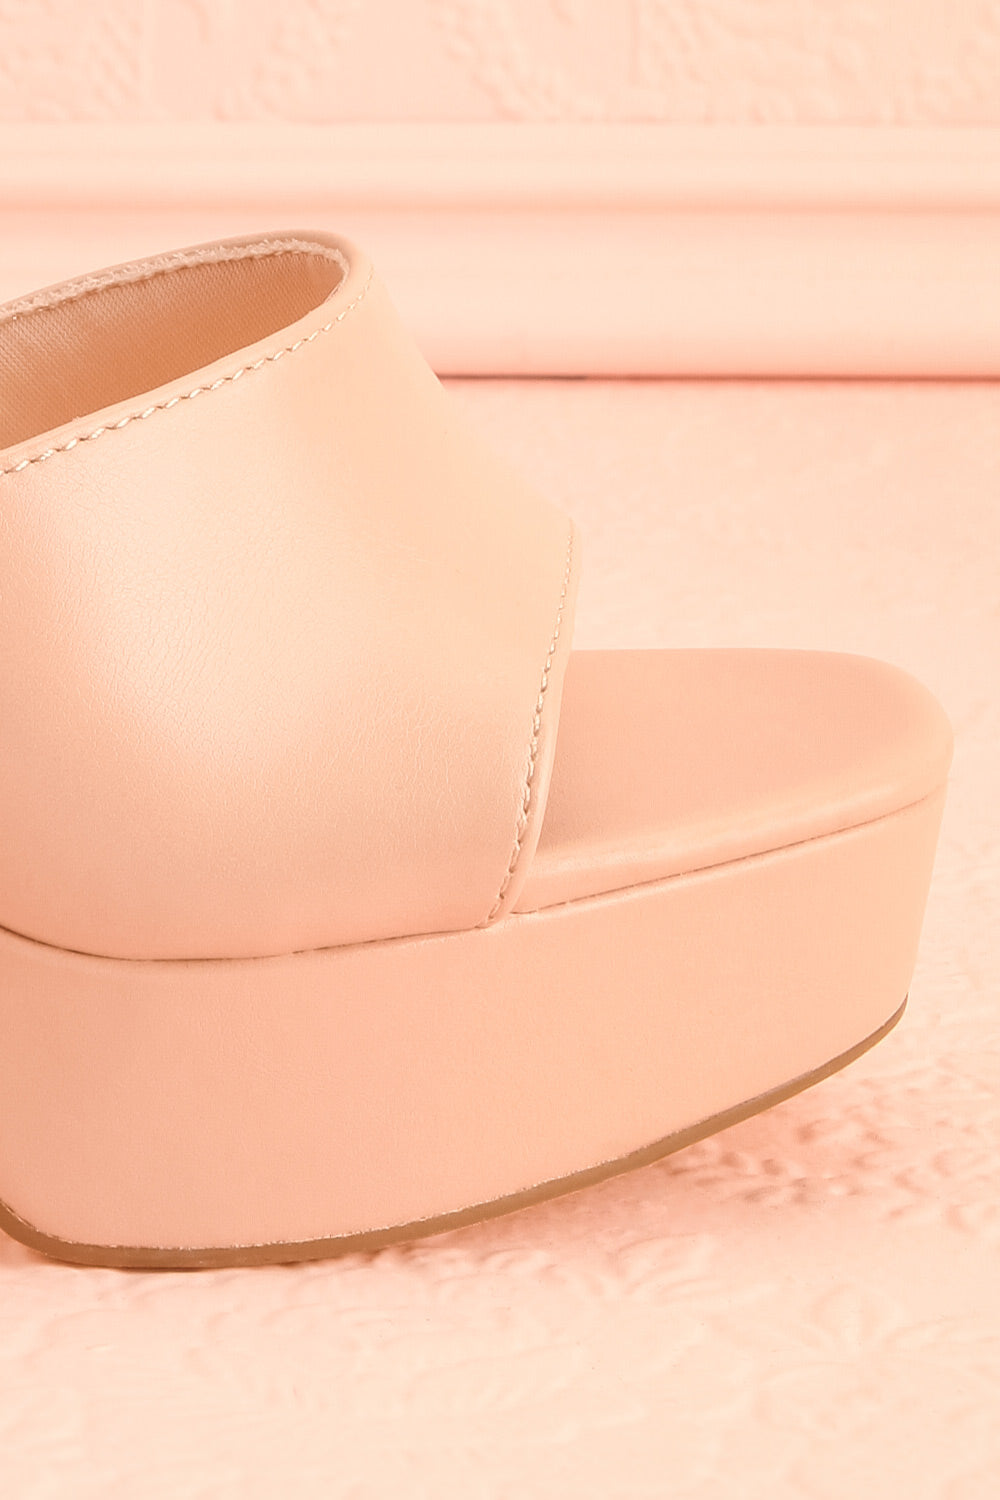 Nerthus Beige High Heel Sandals | Boutique 1861 side close-up